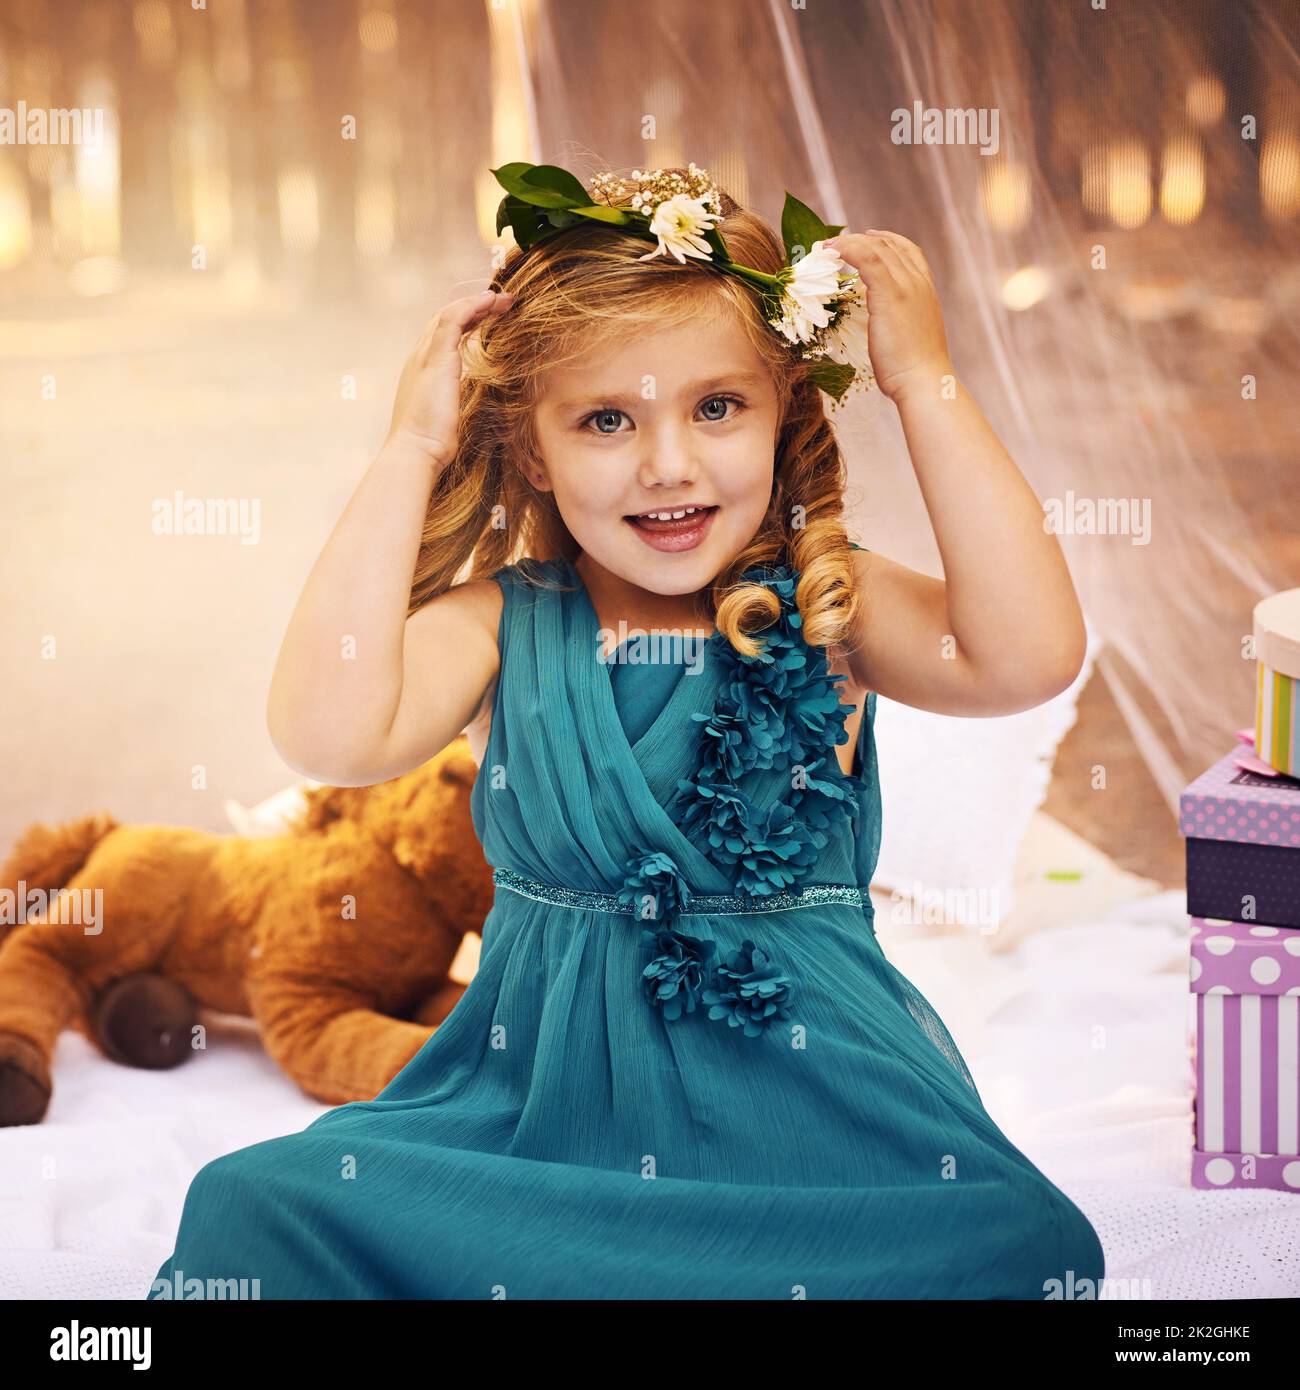 Las flores son importantes para una princesa de hadas. Foto de una niña feliz mirando la cámara y tocando una corona de flores en su cabeza mientras estaba sentada fuera en el bosque. Foto de stock